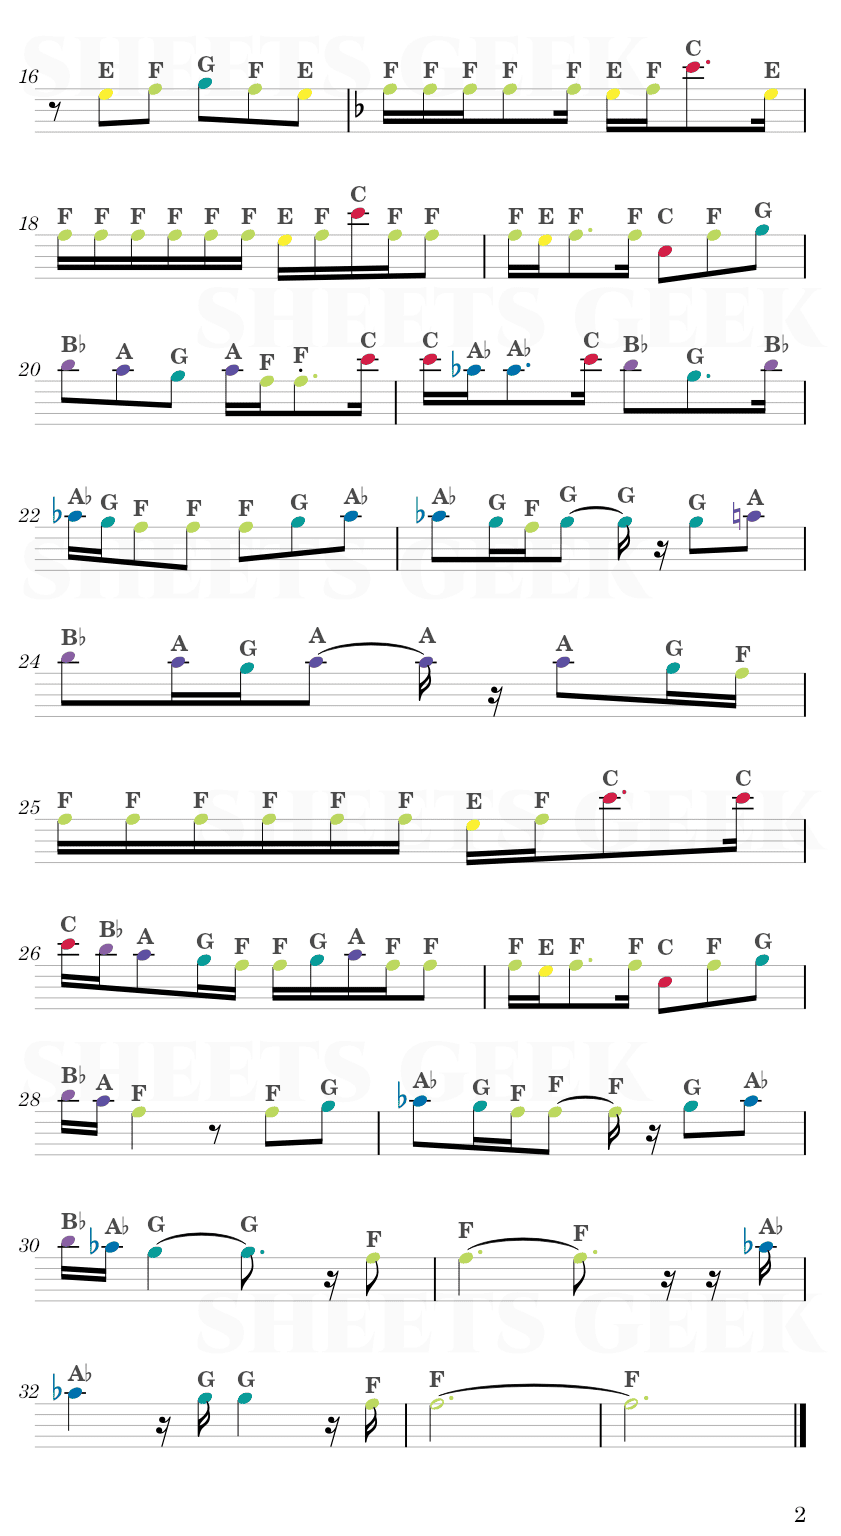 Sore wa Shiisana Hikari no Youna - ERASED Ending Easy Sheet Music Free for piano, keyboard, flute, violin, sax, cello page 2